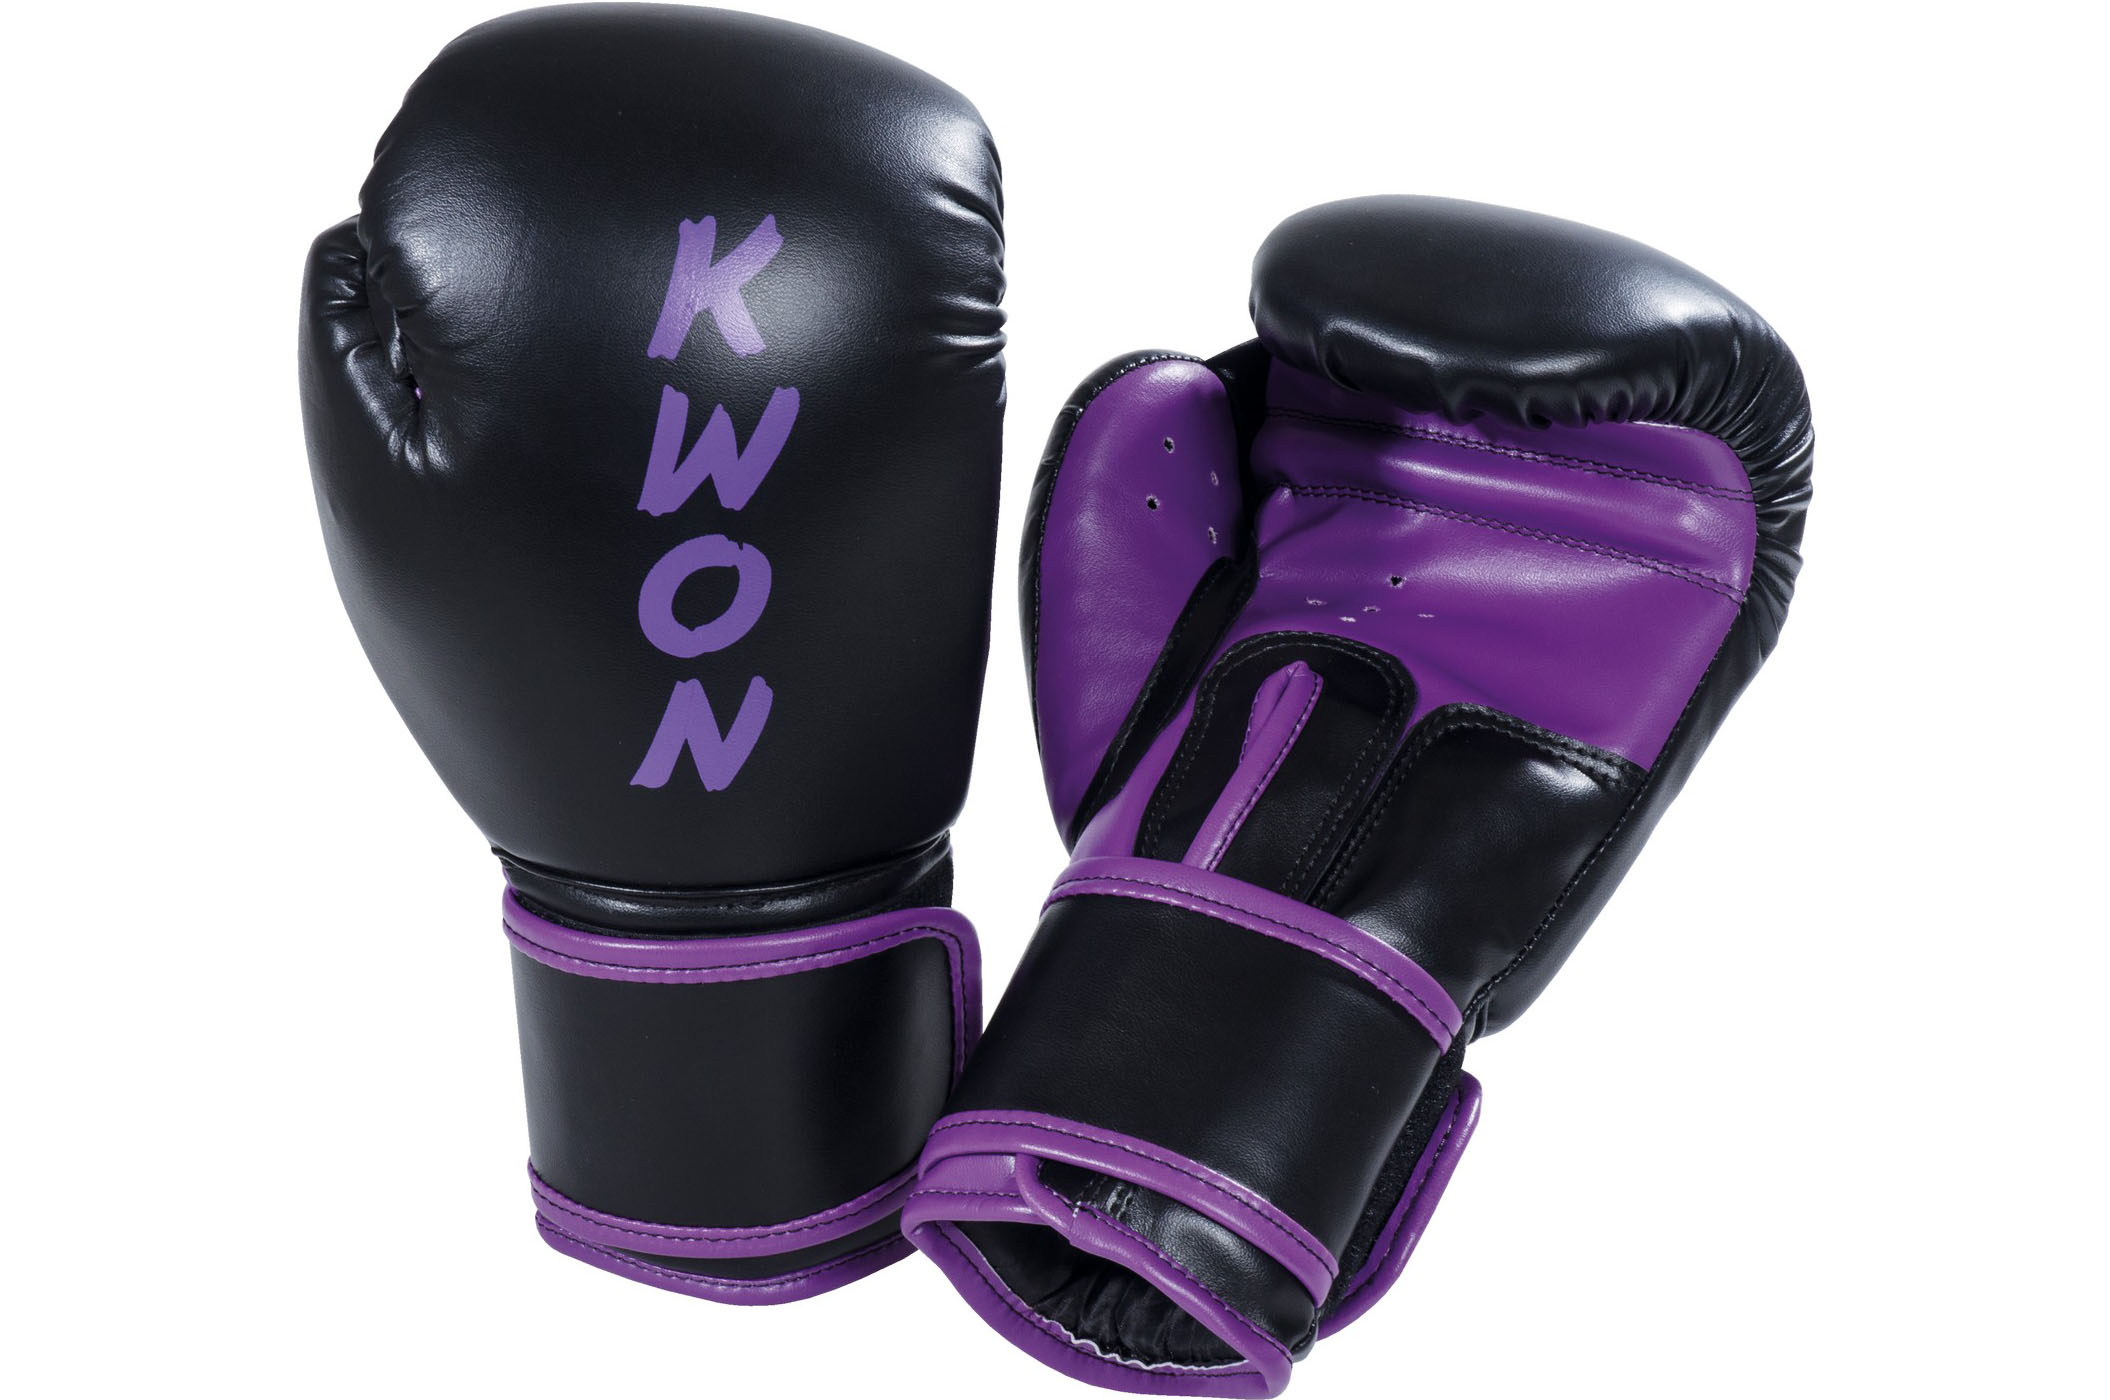 Gants de boxe Thaï enfant Kwon - Boxe Thaï - Disciplines - Sports de combat